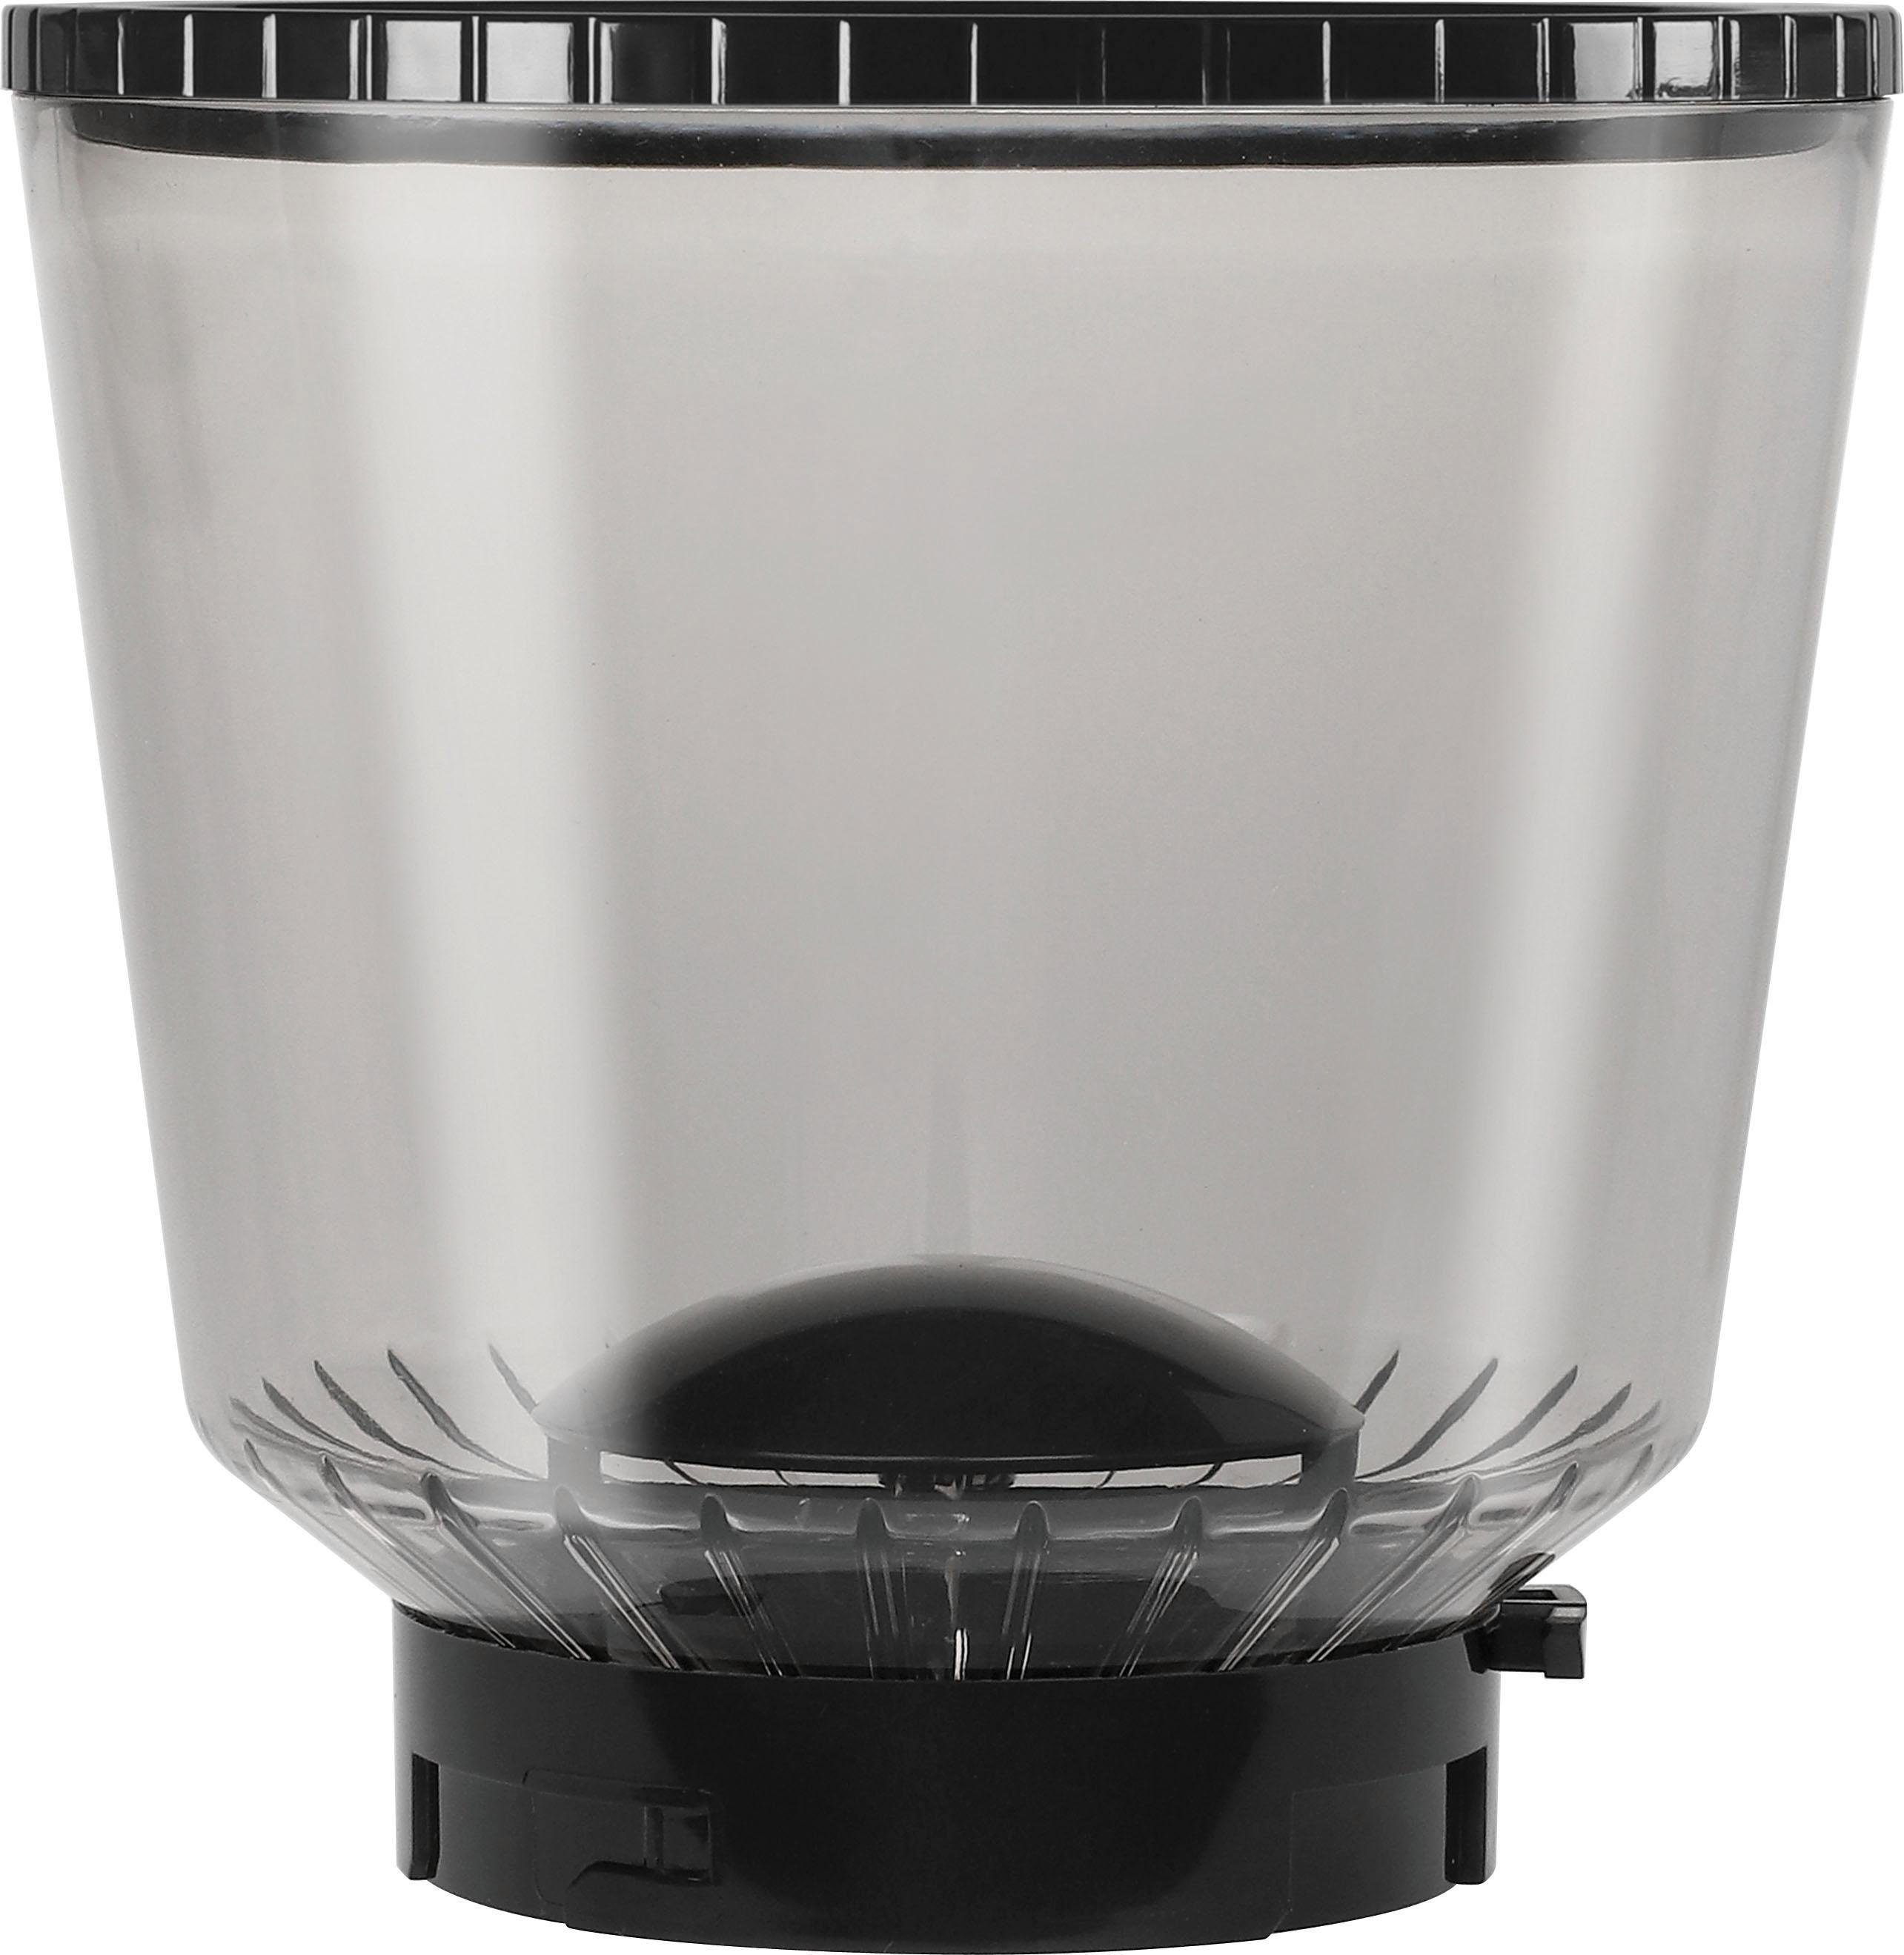 Melitta Kaffeemühle Calibra Bohnenbehälter 1027-01 Kegelmahlwerk, 375 W, g 160 schwarz-Edelstahl